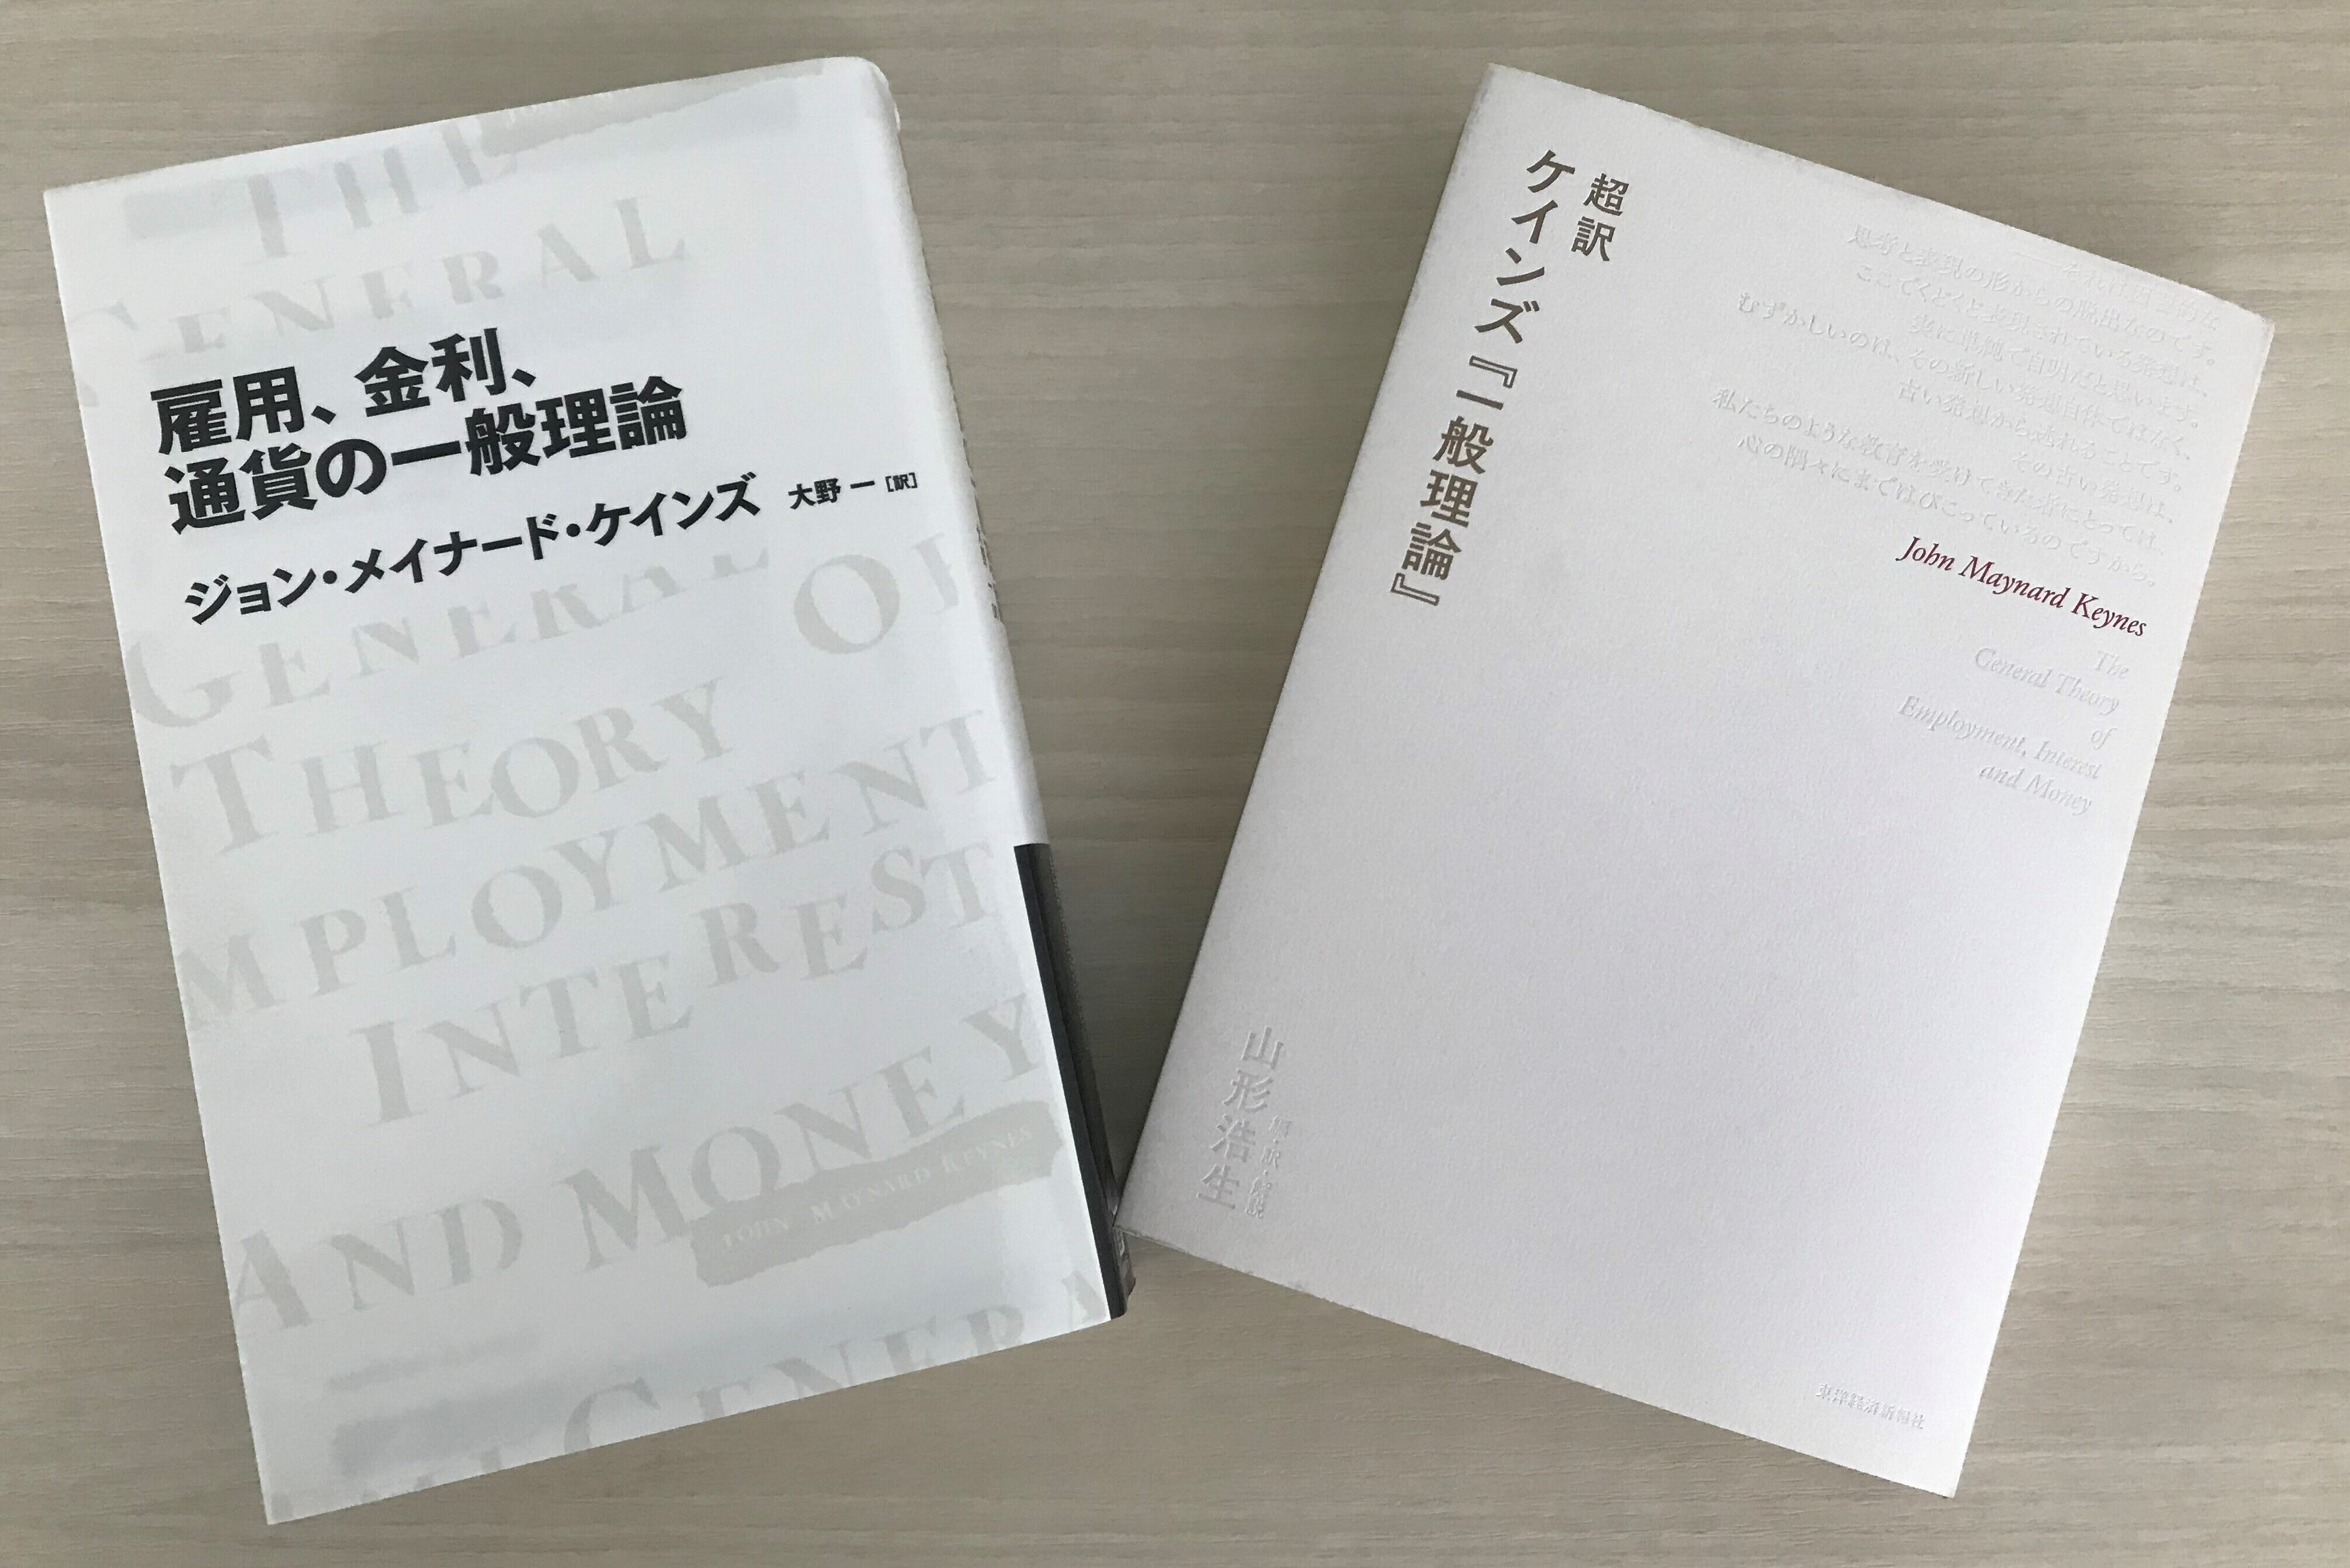 山形浩生氏が『一般理論』のエッセンスをまとめた「超訳」(右)と大野一氏による新訳
